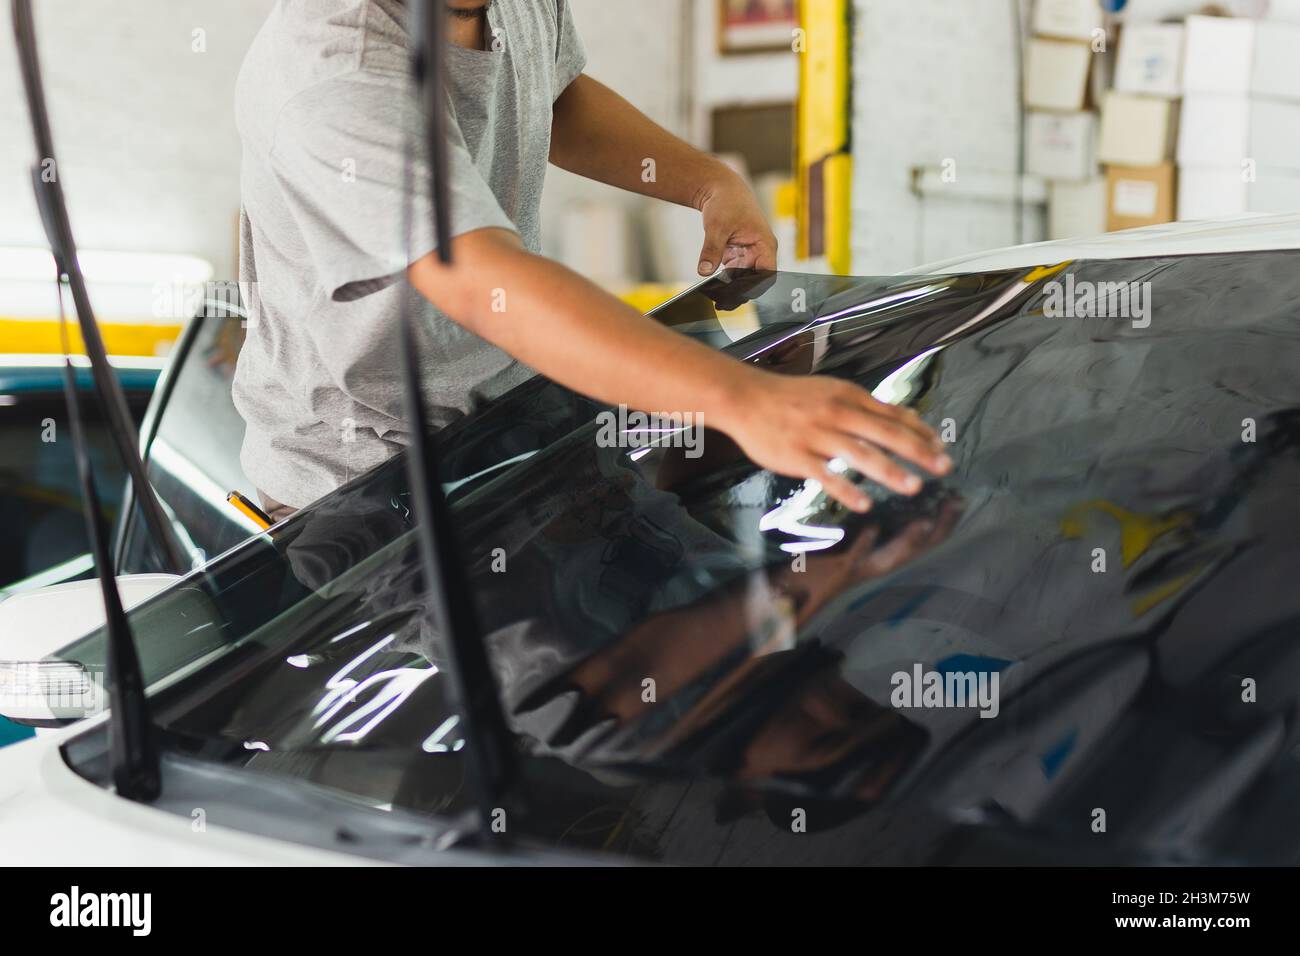 Autospezialist, der im Autoservice Farbfolie auf ein Autofenster aufklebt  Stockfotografie - Alamy